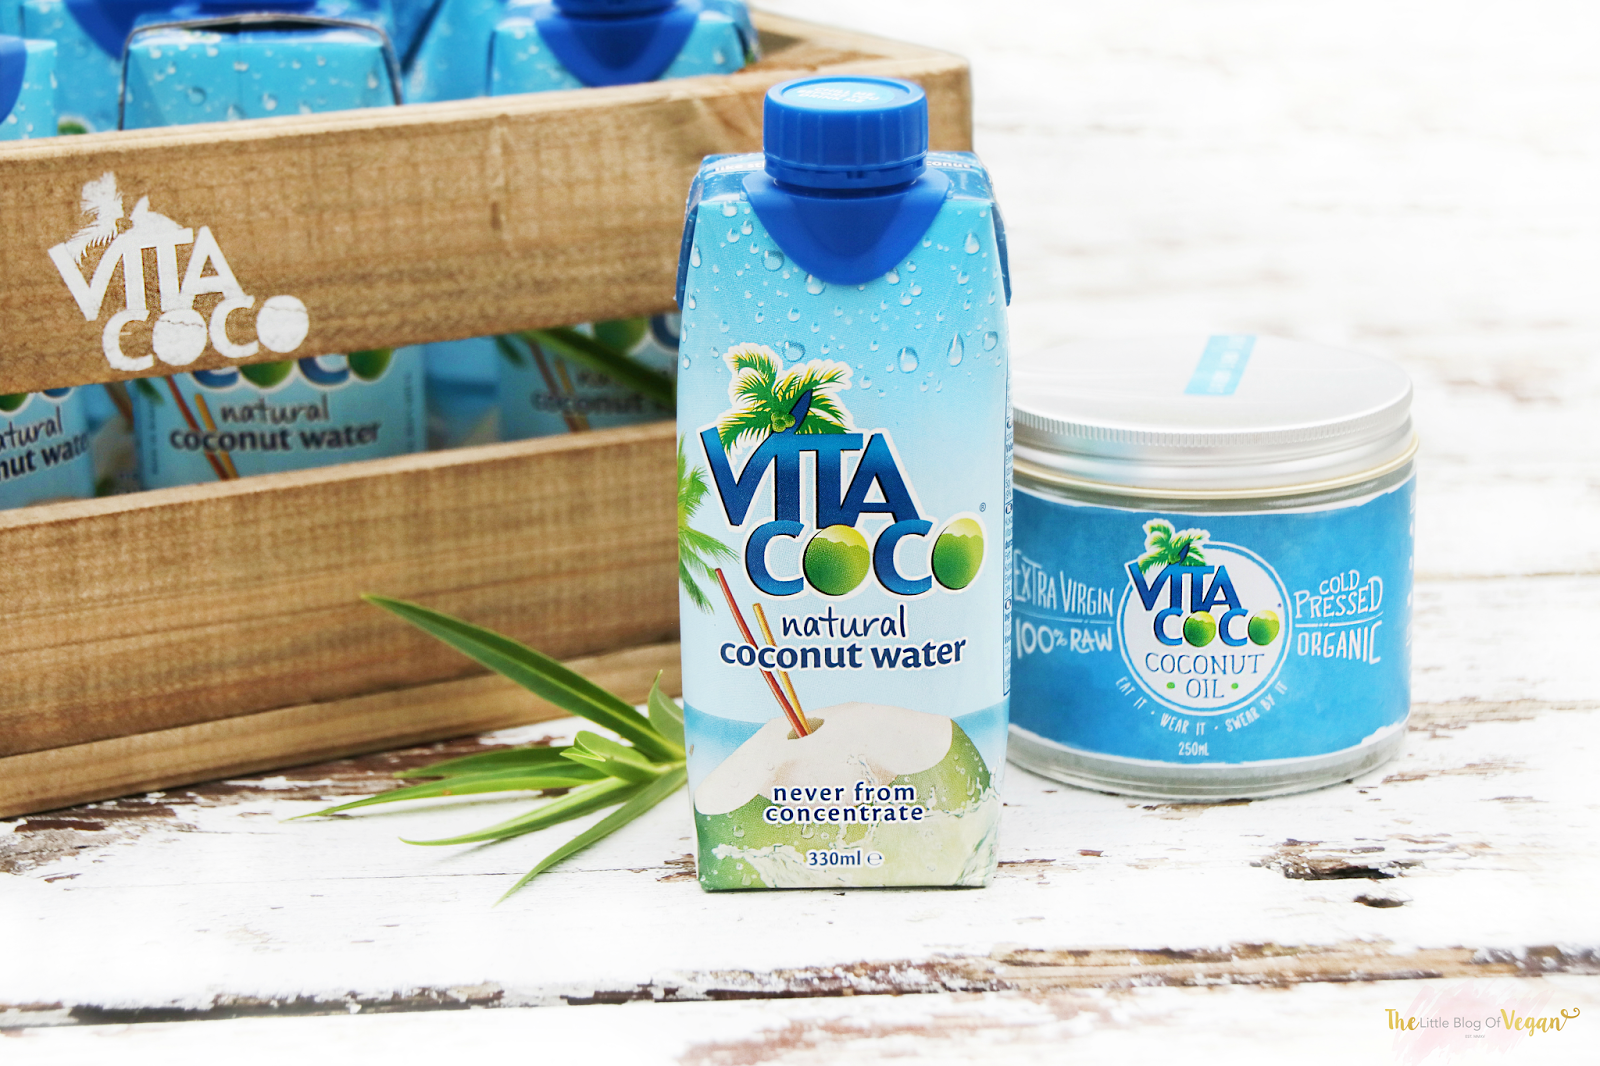 vita coco coconut milk review